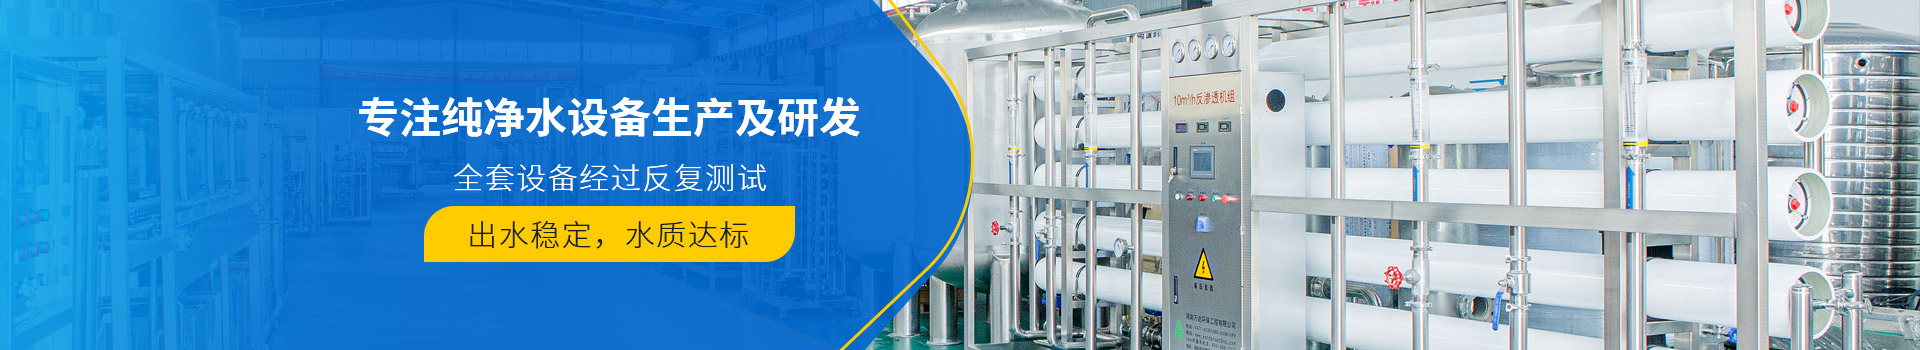 0.5吨/H 纯水机-纯净水设备-武汉纯水设备厂家 (PC+WAP)-纯净水设备生产销售